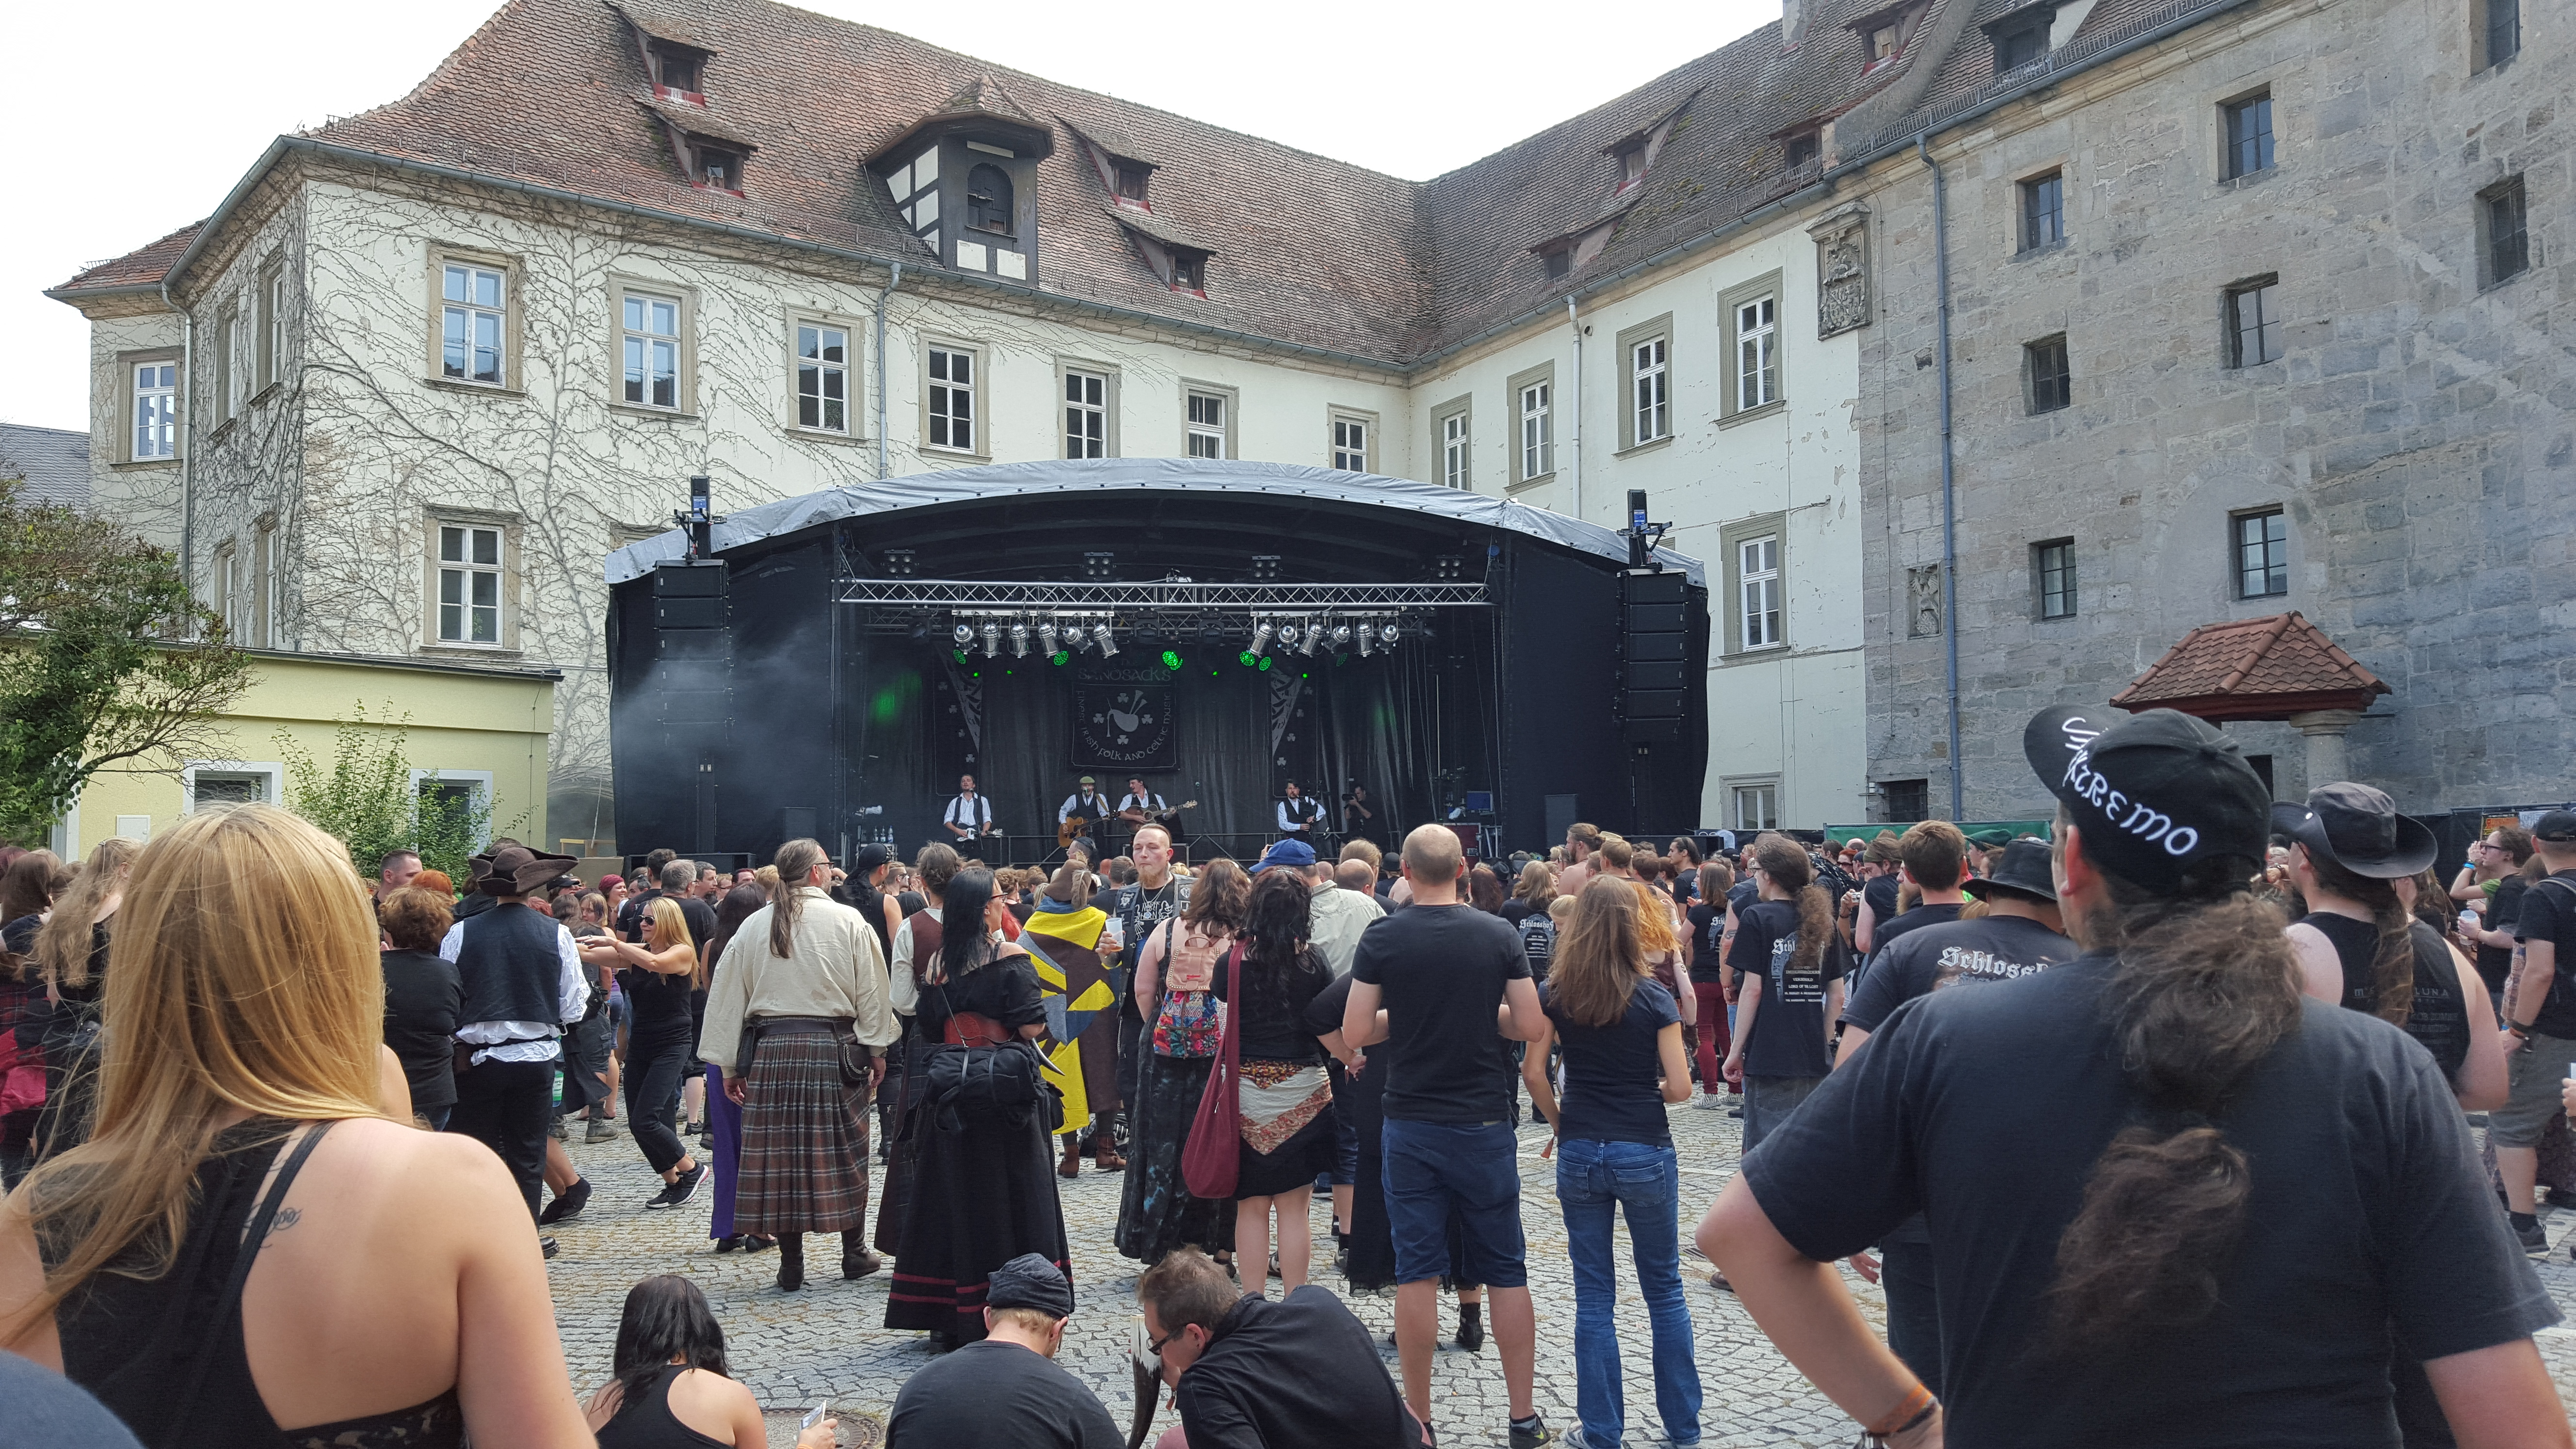 Schlosshof Festival